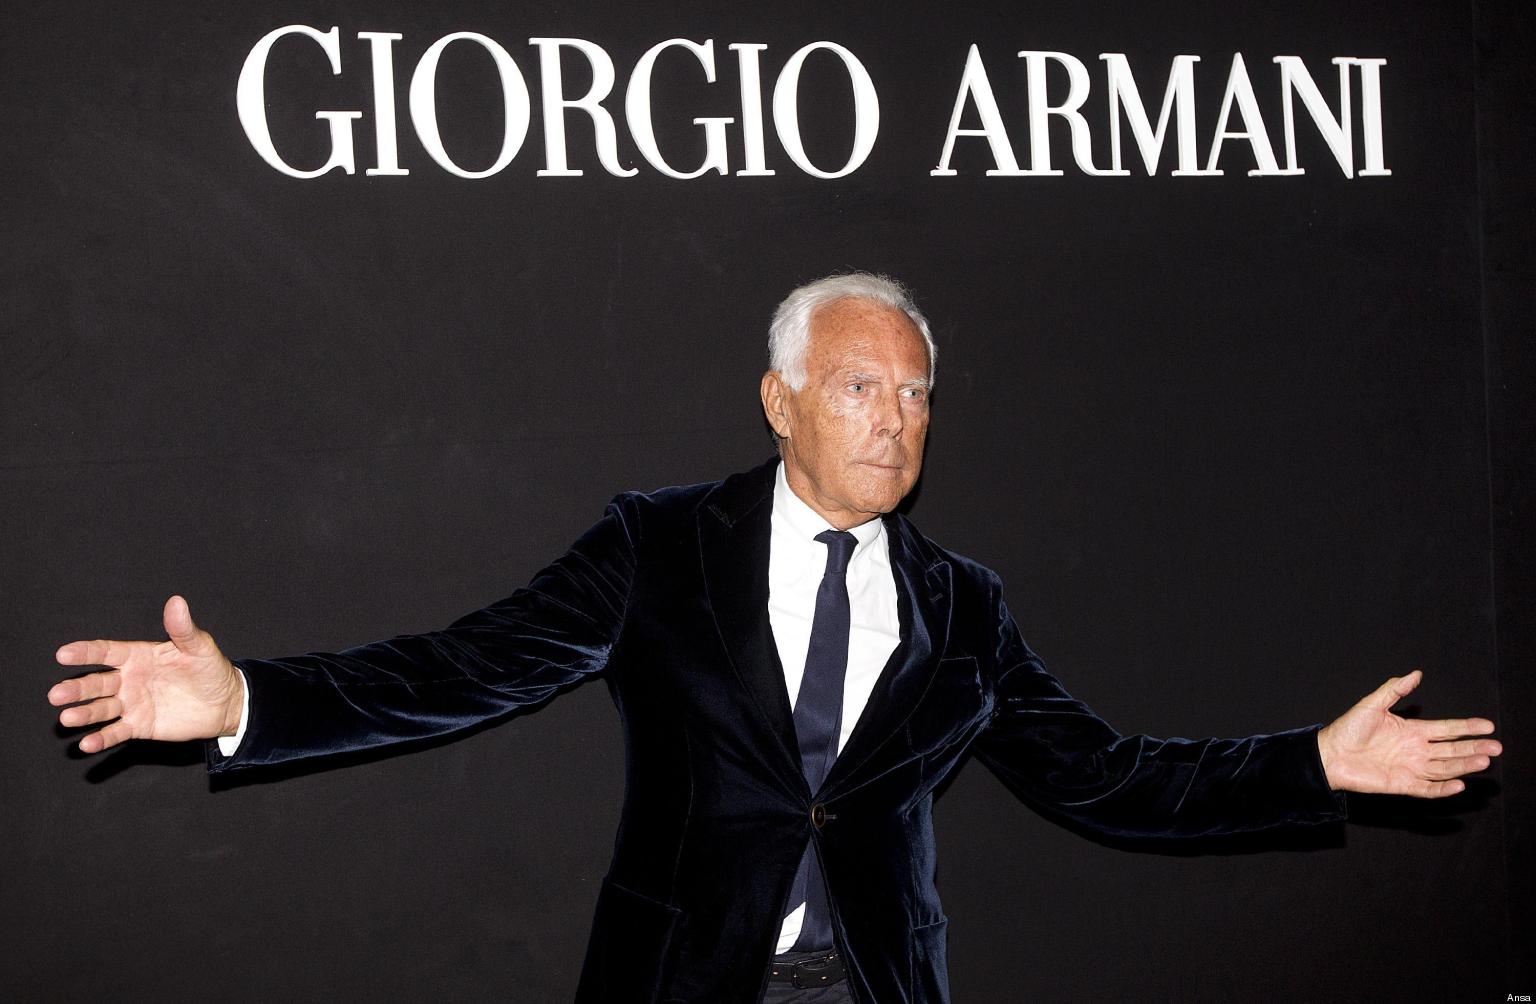 Happy birthday Giorgio Armani(born 11.7.1934)  